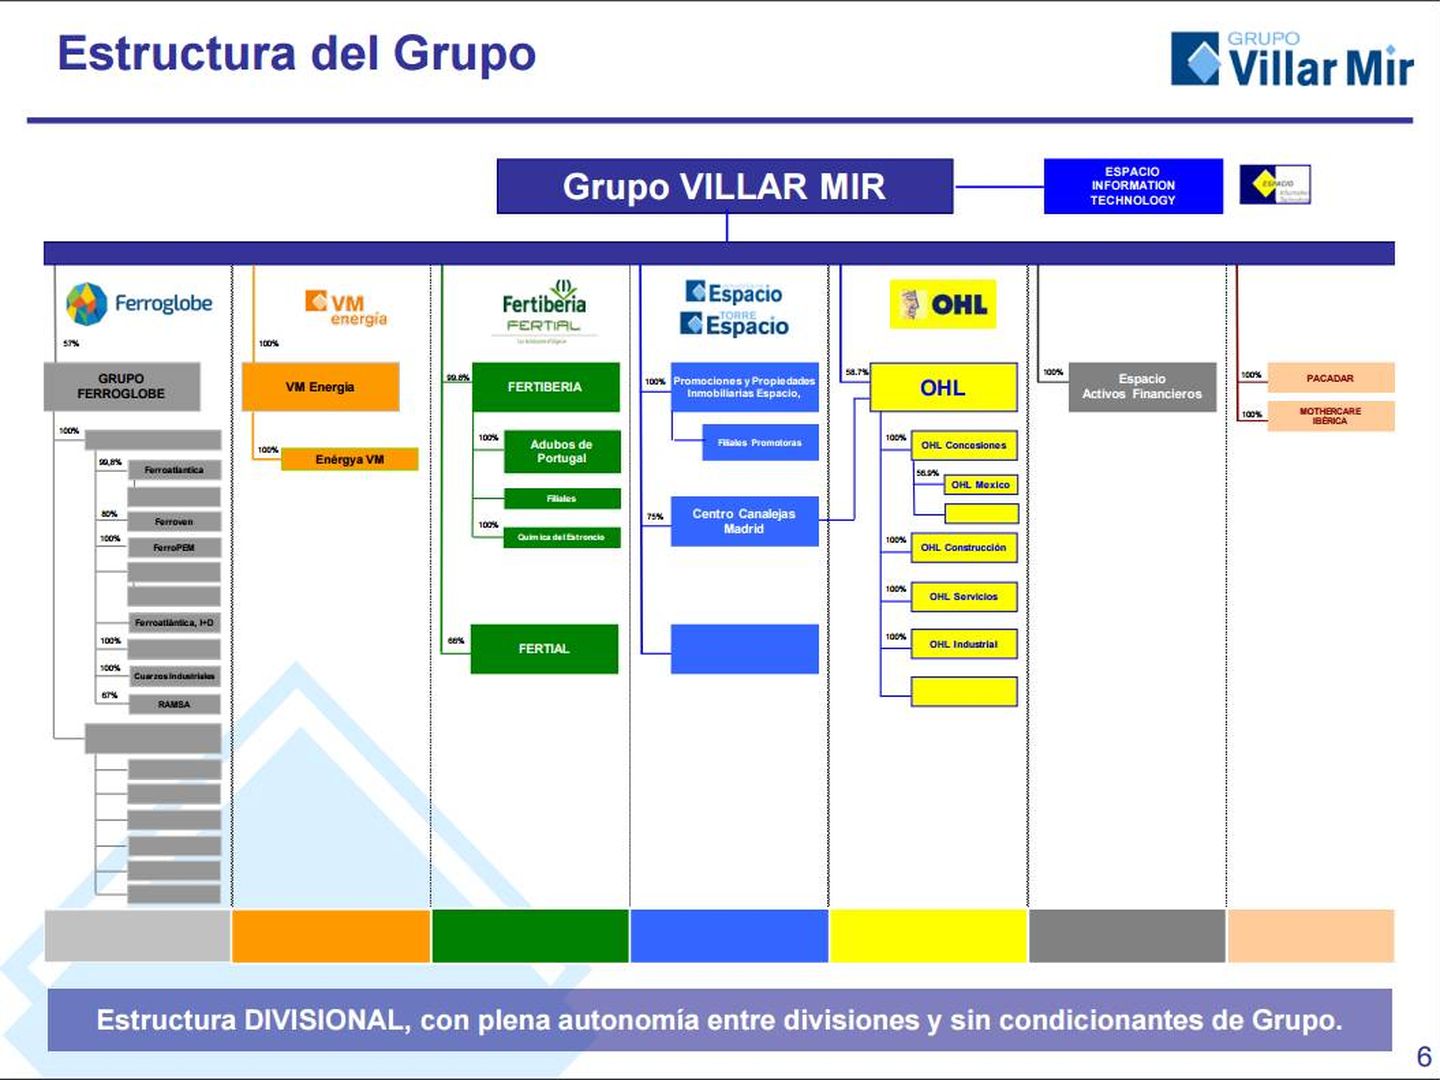 Diapositiva de la presentación corporativa del Grupo Villar Mir